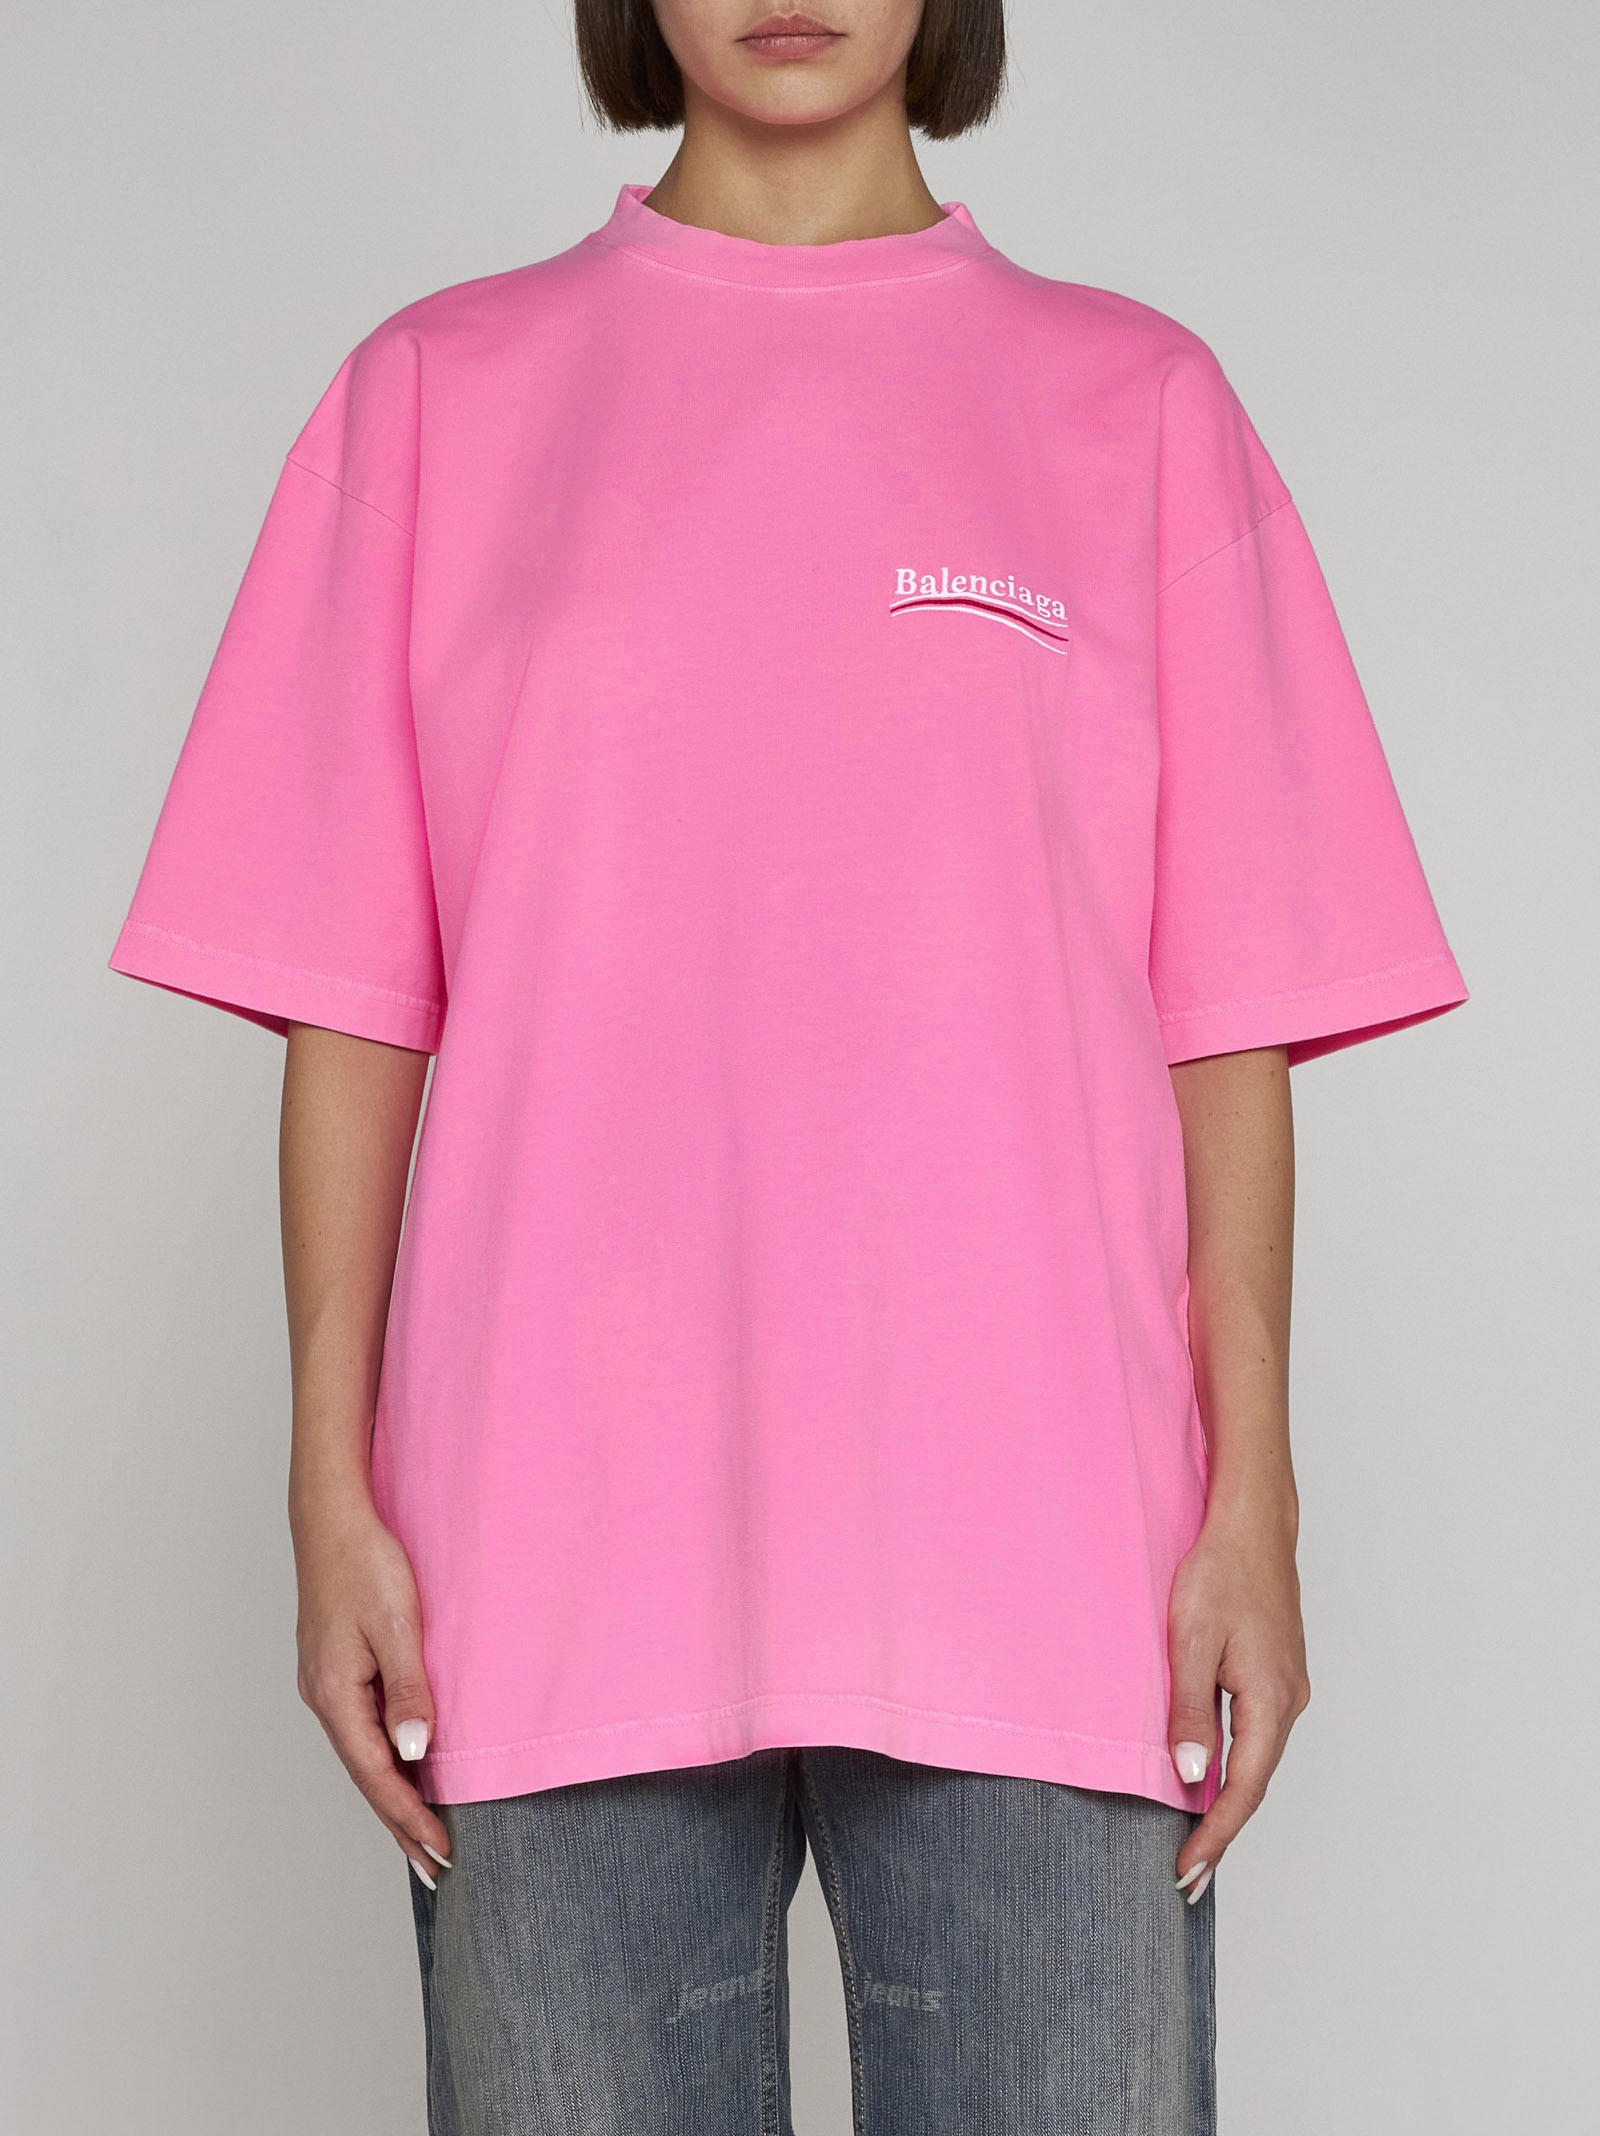 Balenciaga - Pink Cotton Logo T-Shirt